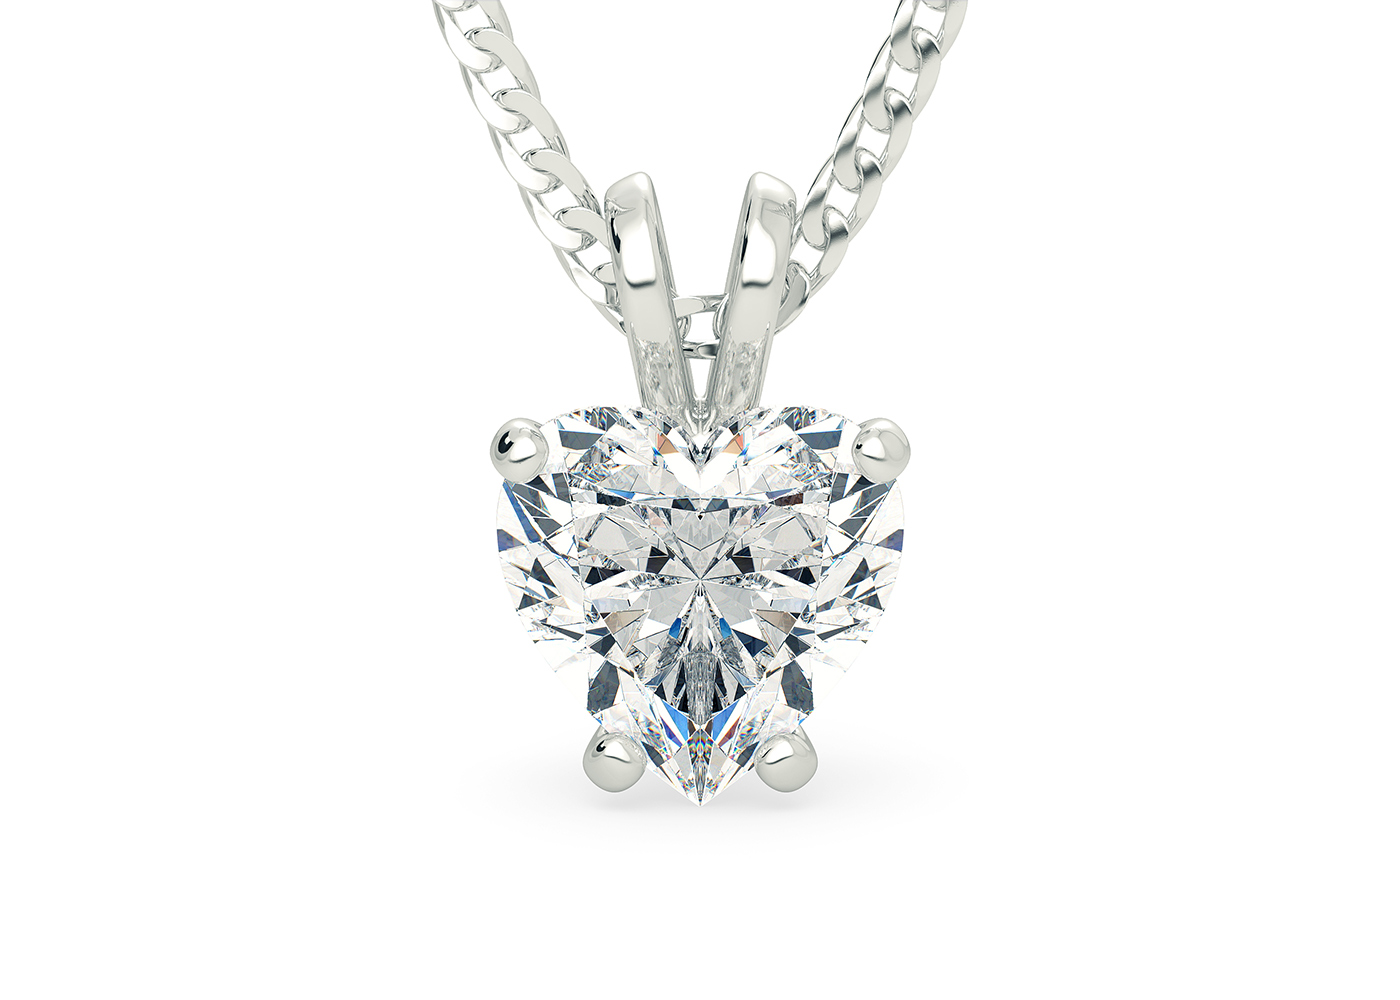 One Carat Heart Diamond Pendant in Platinum 950